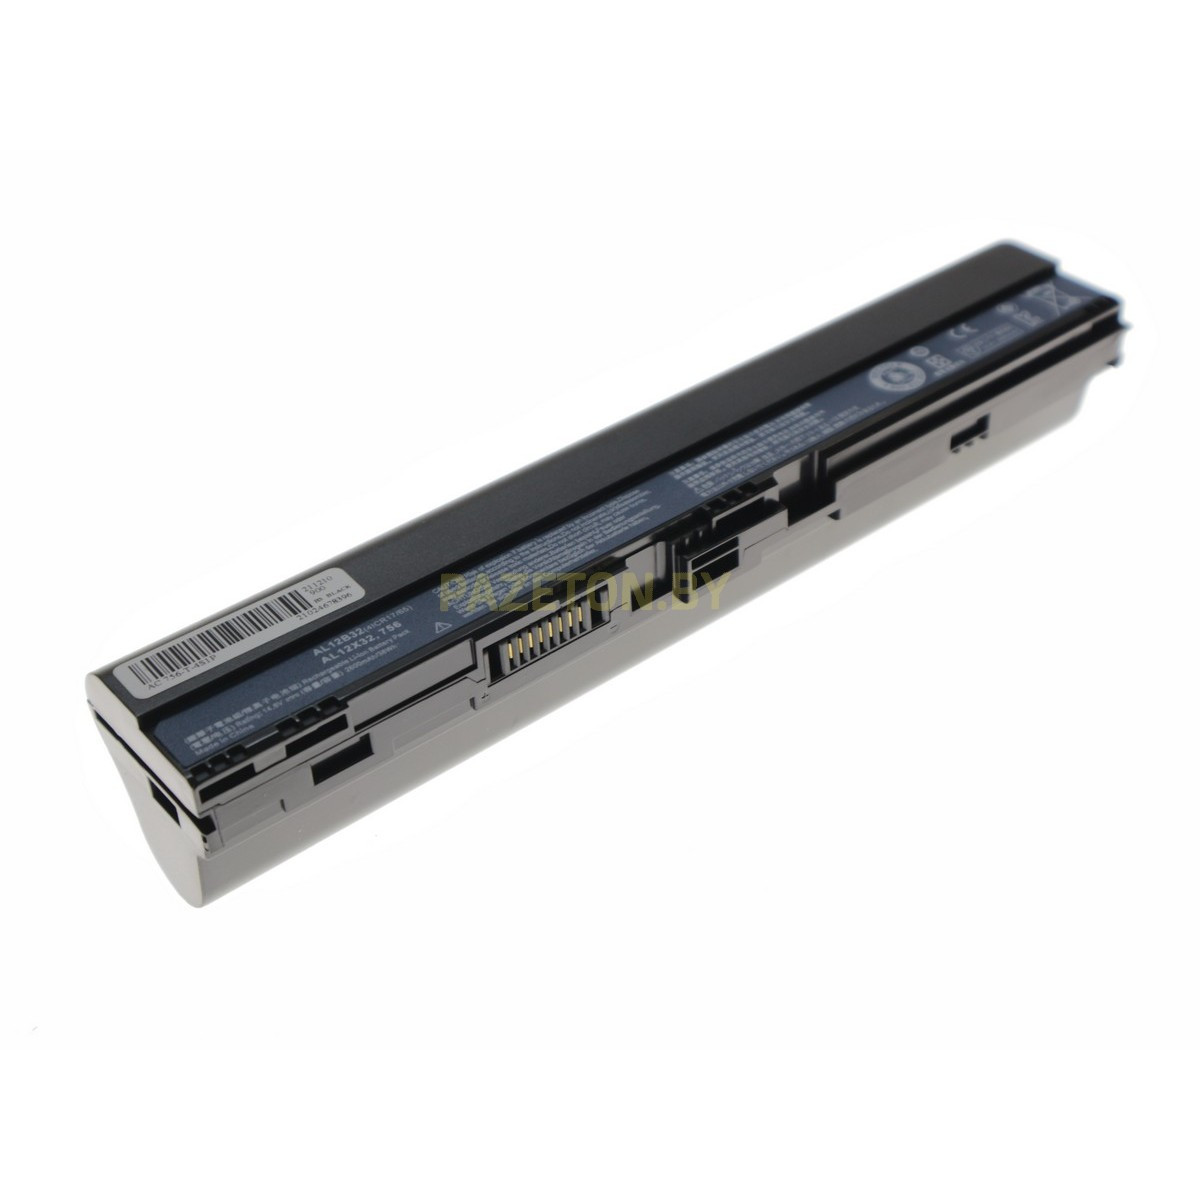 Батарея для ноутбука Acer Aspire One 725 756 AO725 AO756 li-ion 14,8v 2600mah черный